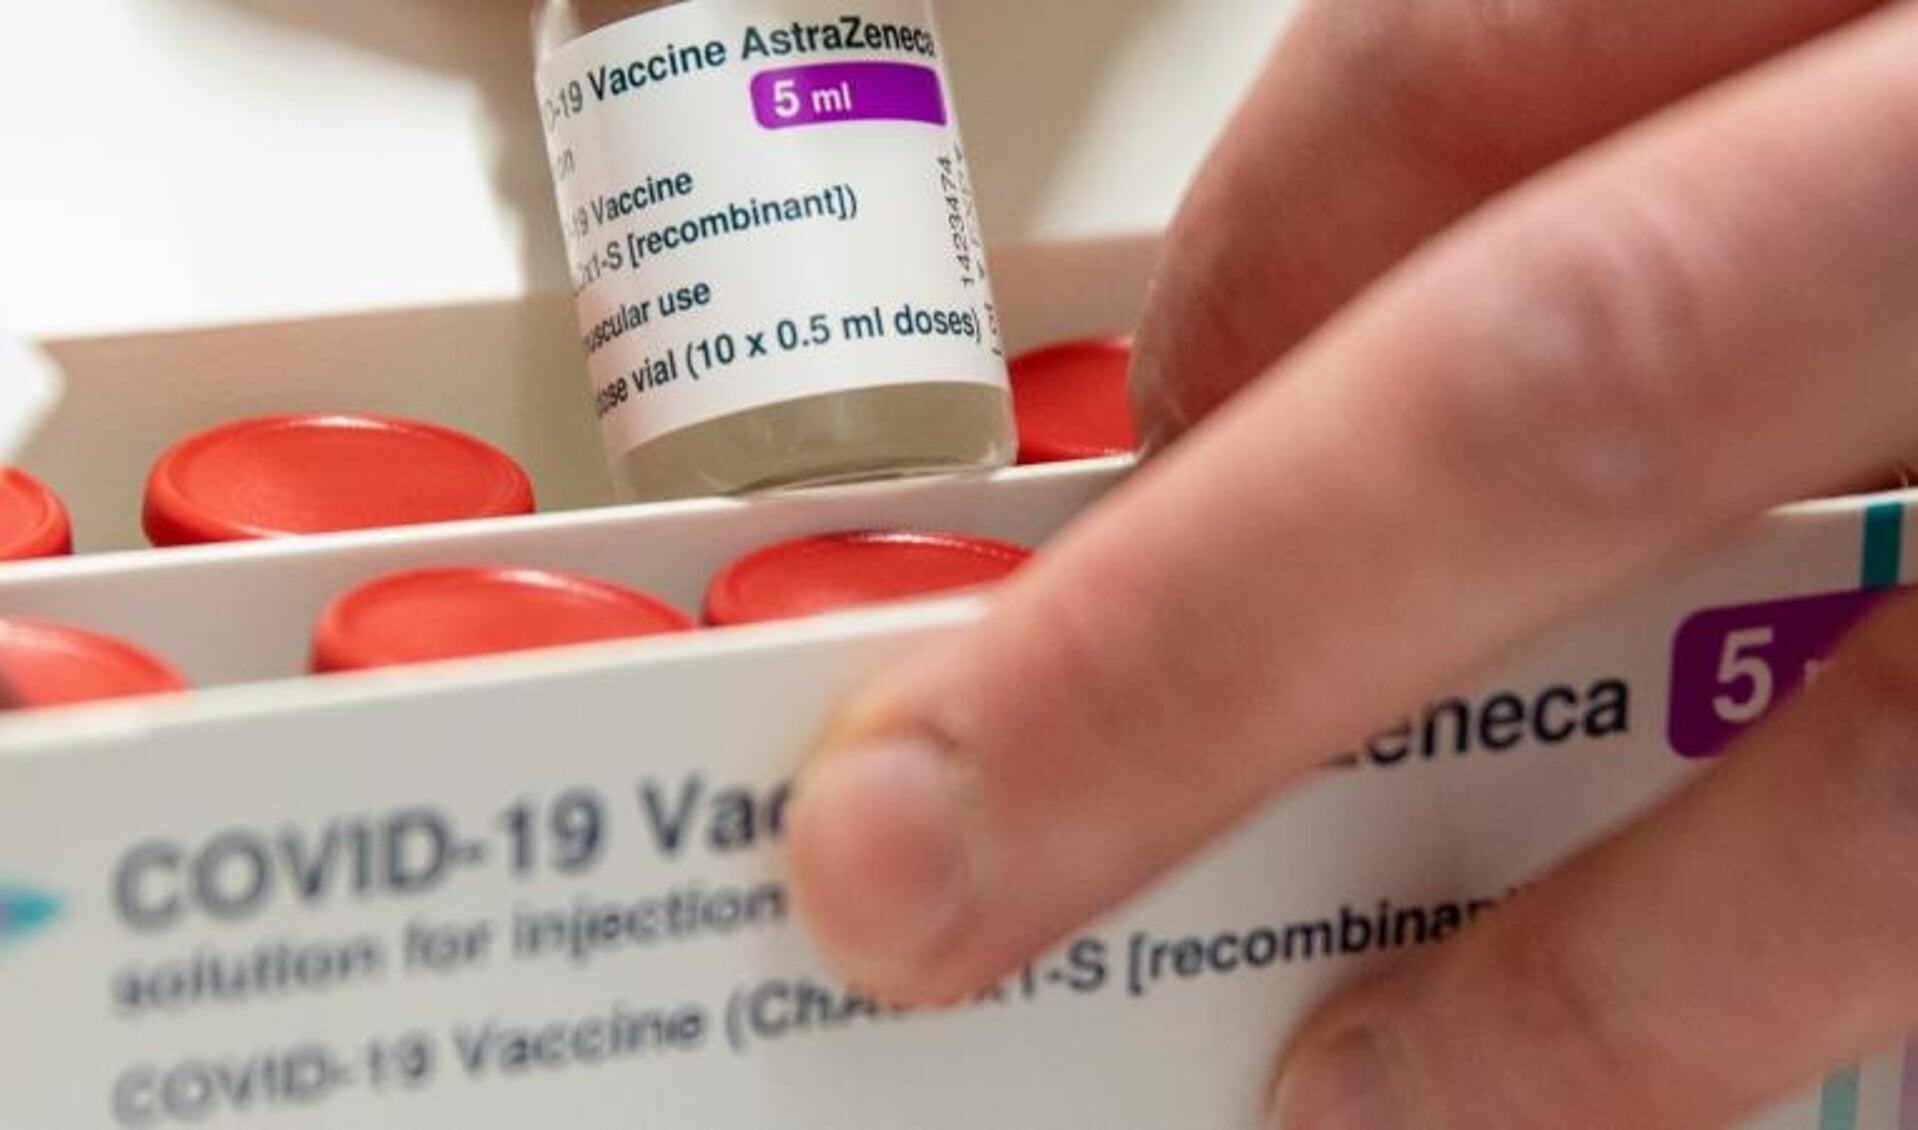 Huisarsten in Drenthe voorzien van extra vaccins.